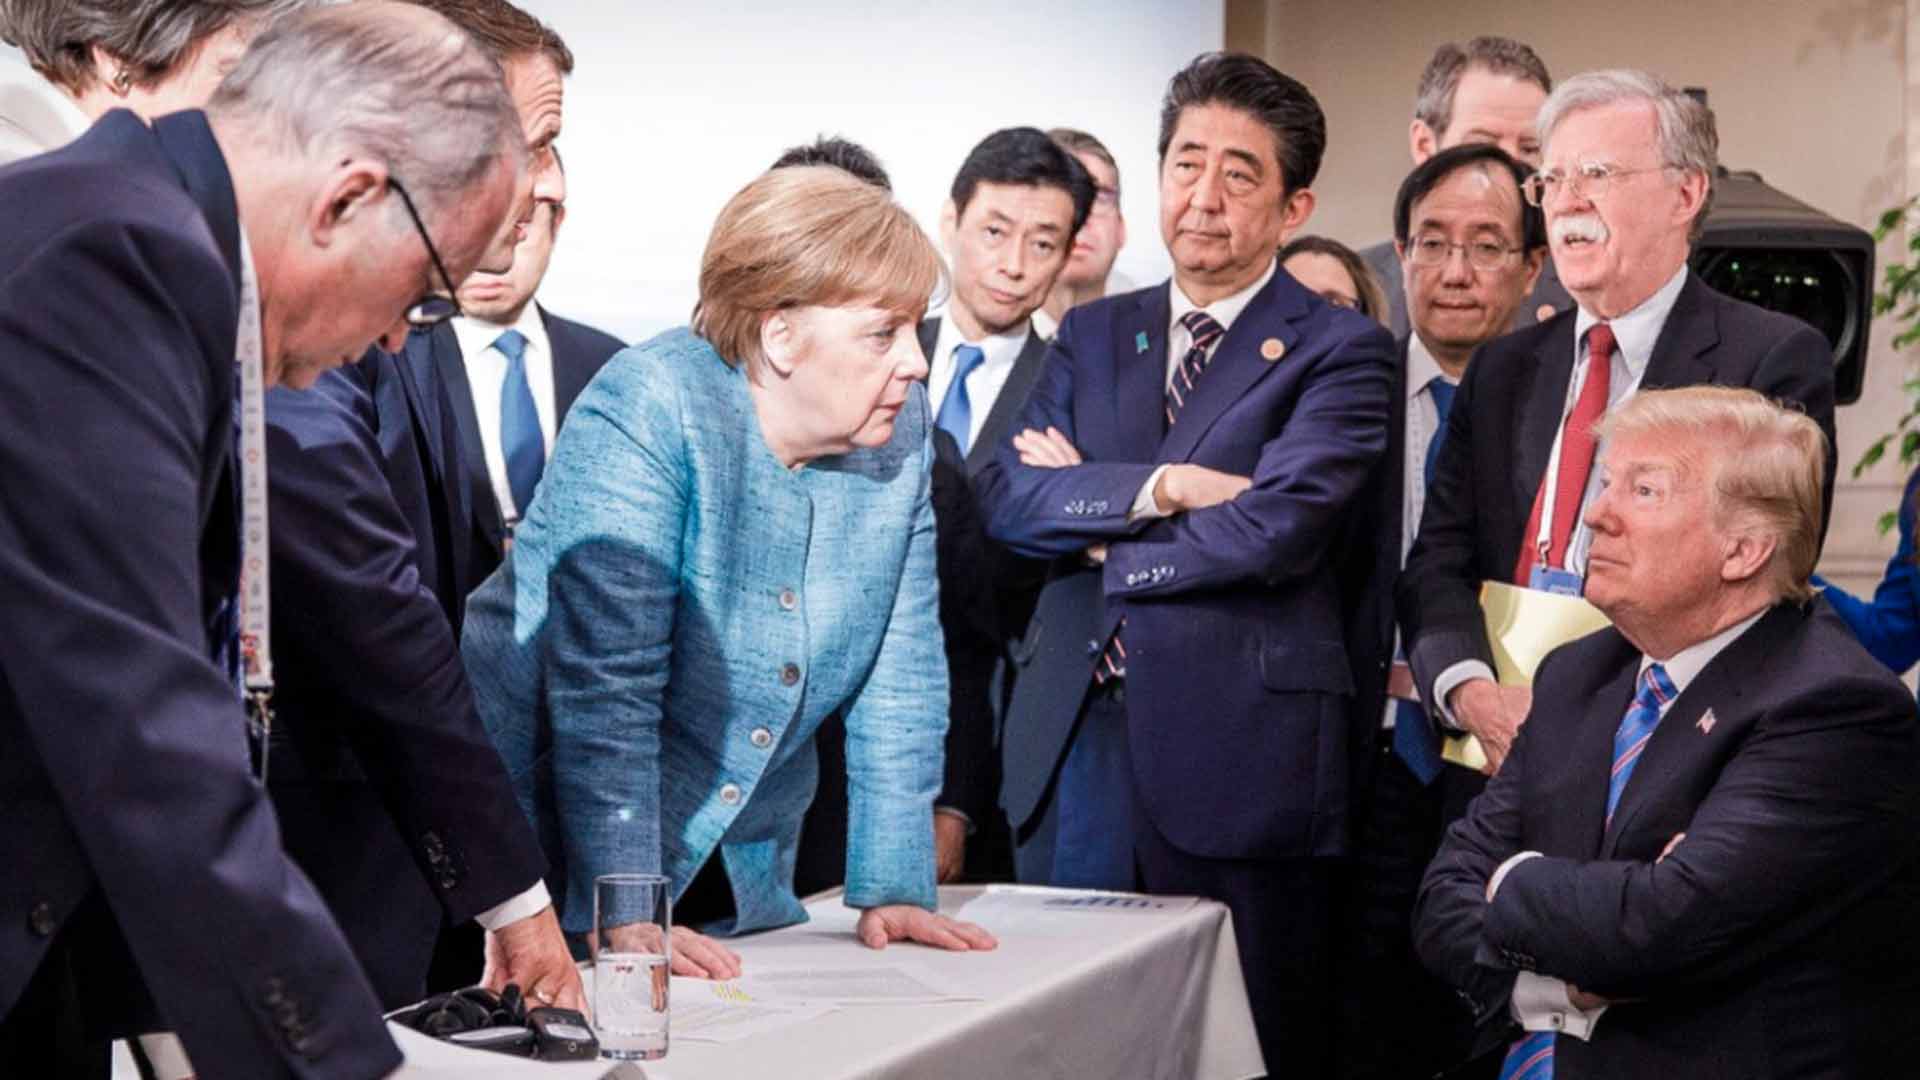 Una foto publicada por Merkel en Instagram da cuenta de la tensión en la Cumbre del G7